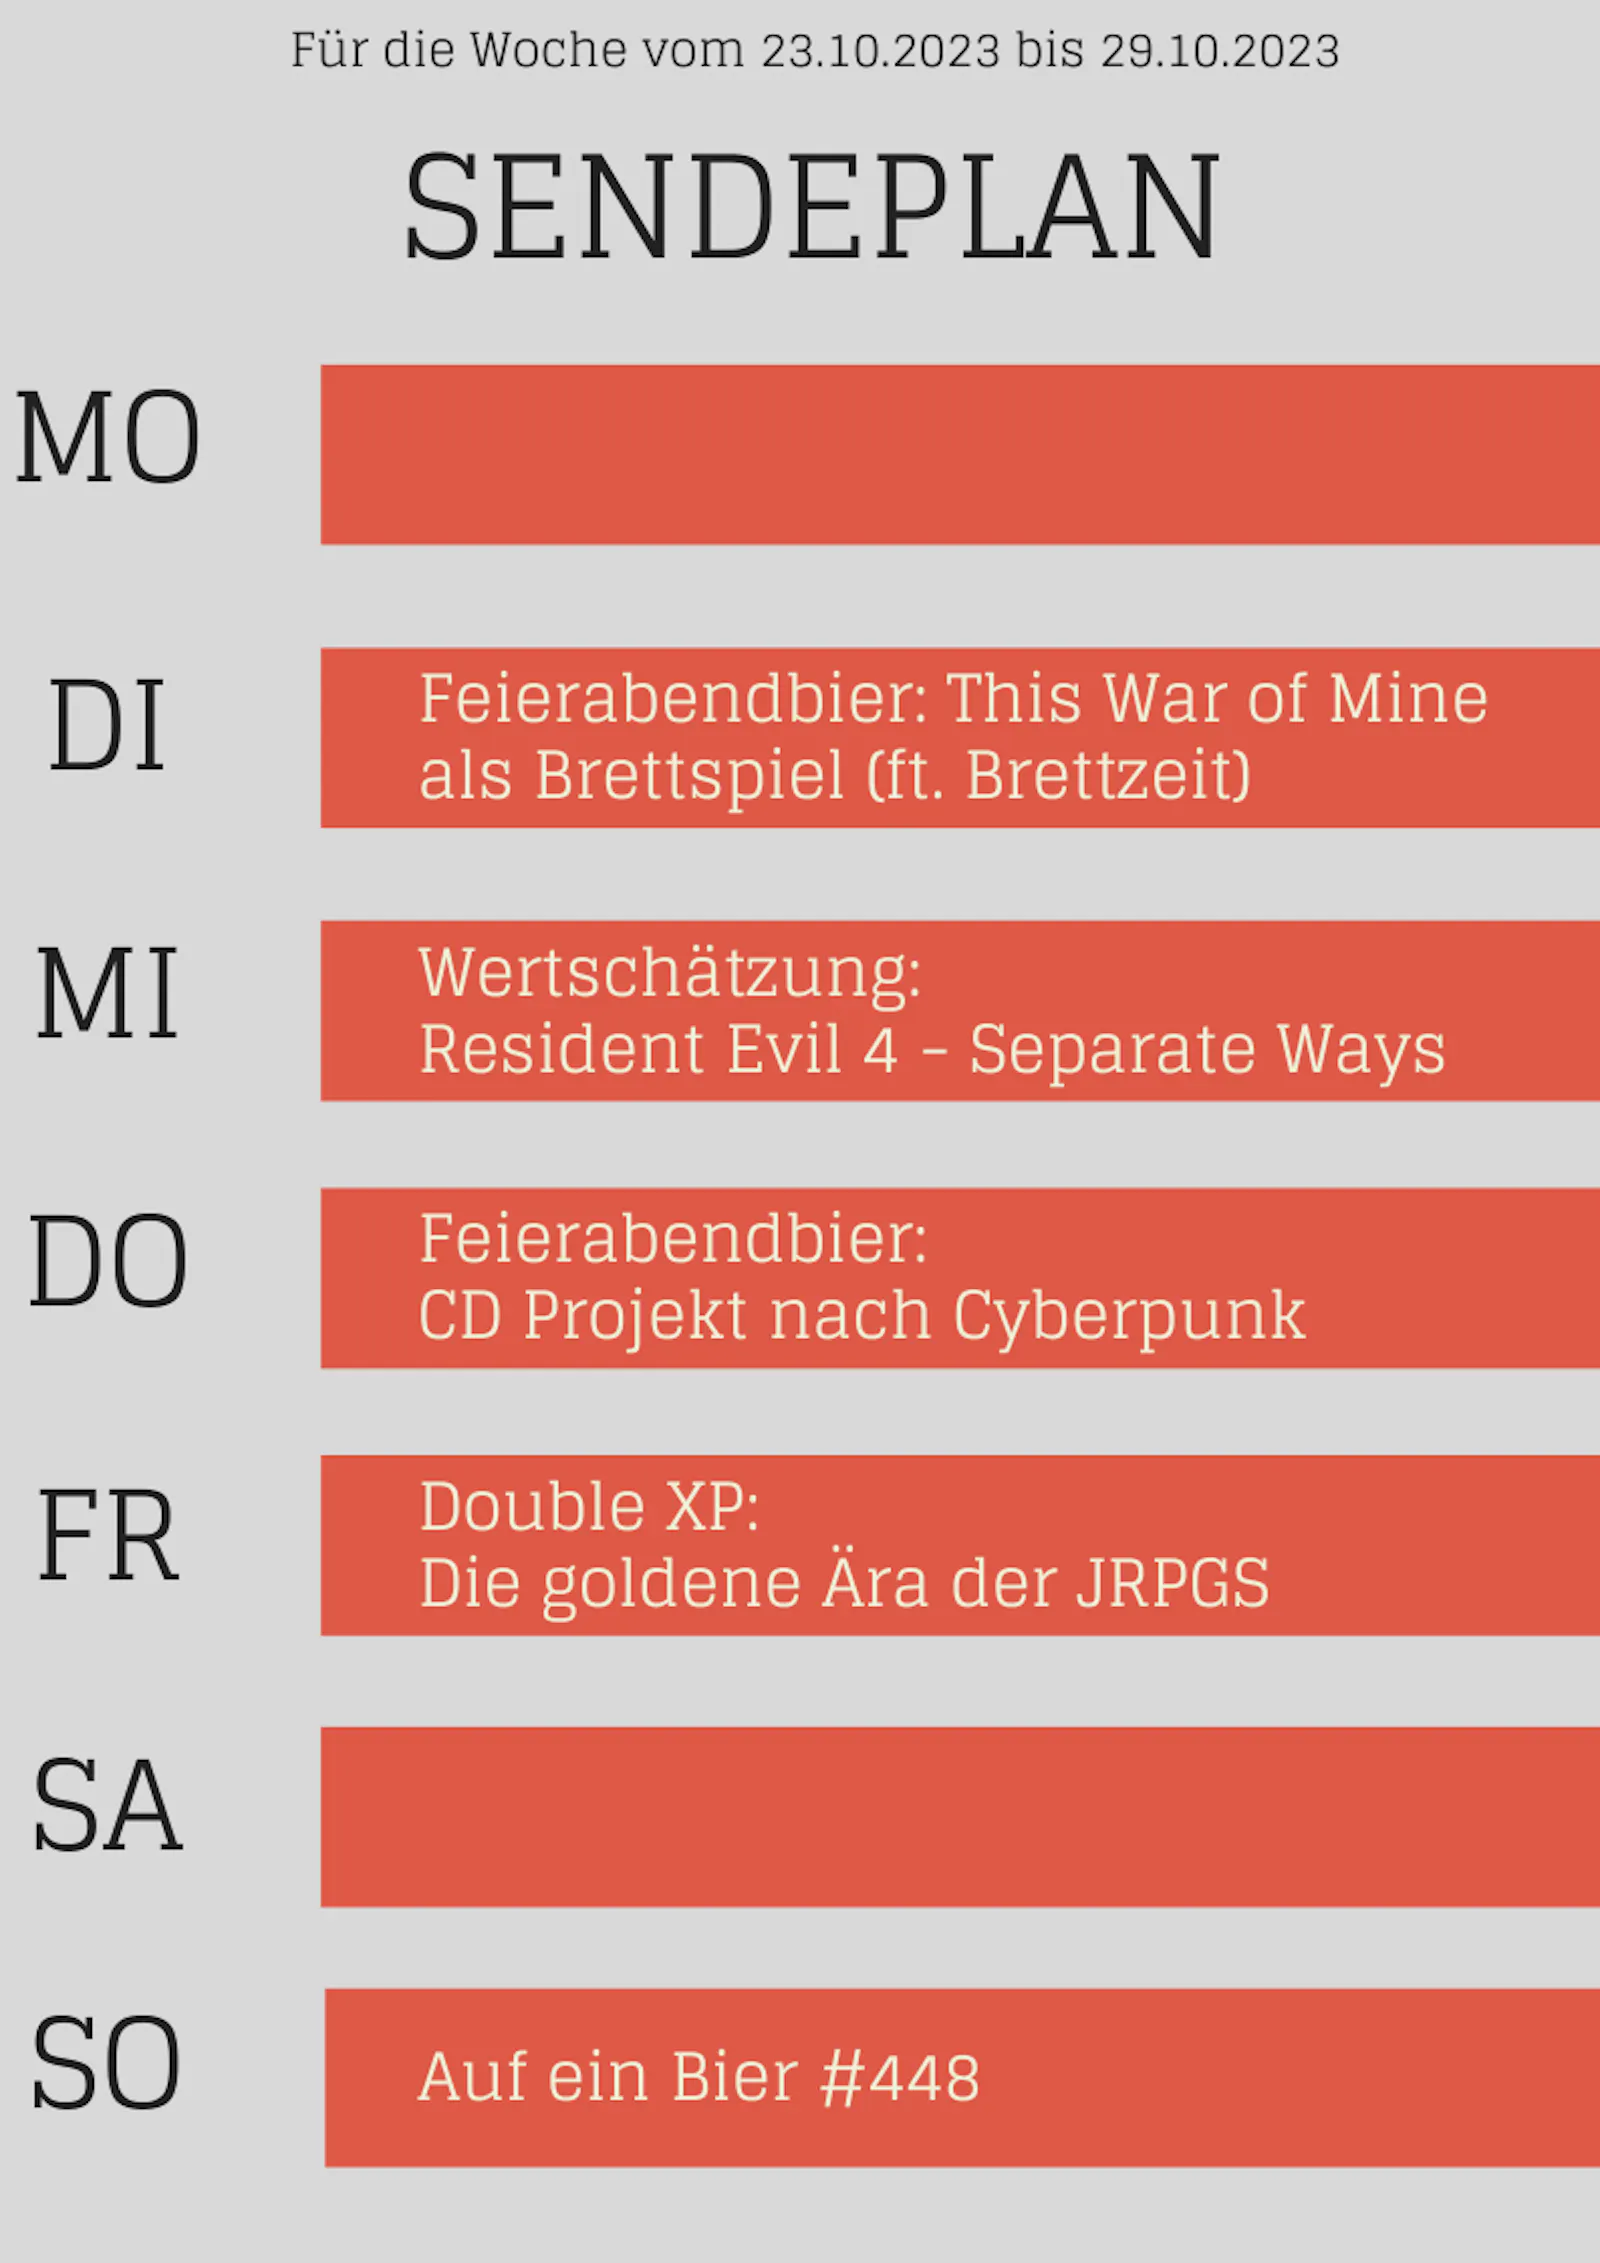 Plan bis 29.10.23
DI This War of Mine als Brettspiel
MI Resident Evil 4 DLC
DO CD Projekt nach Cyberpunk
FR Double XP
SO Auf ein Bier #448